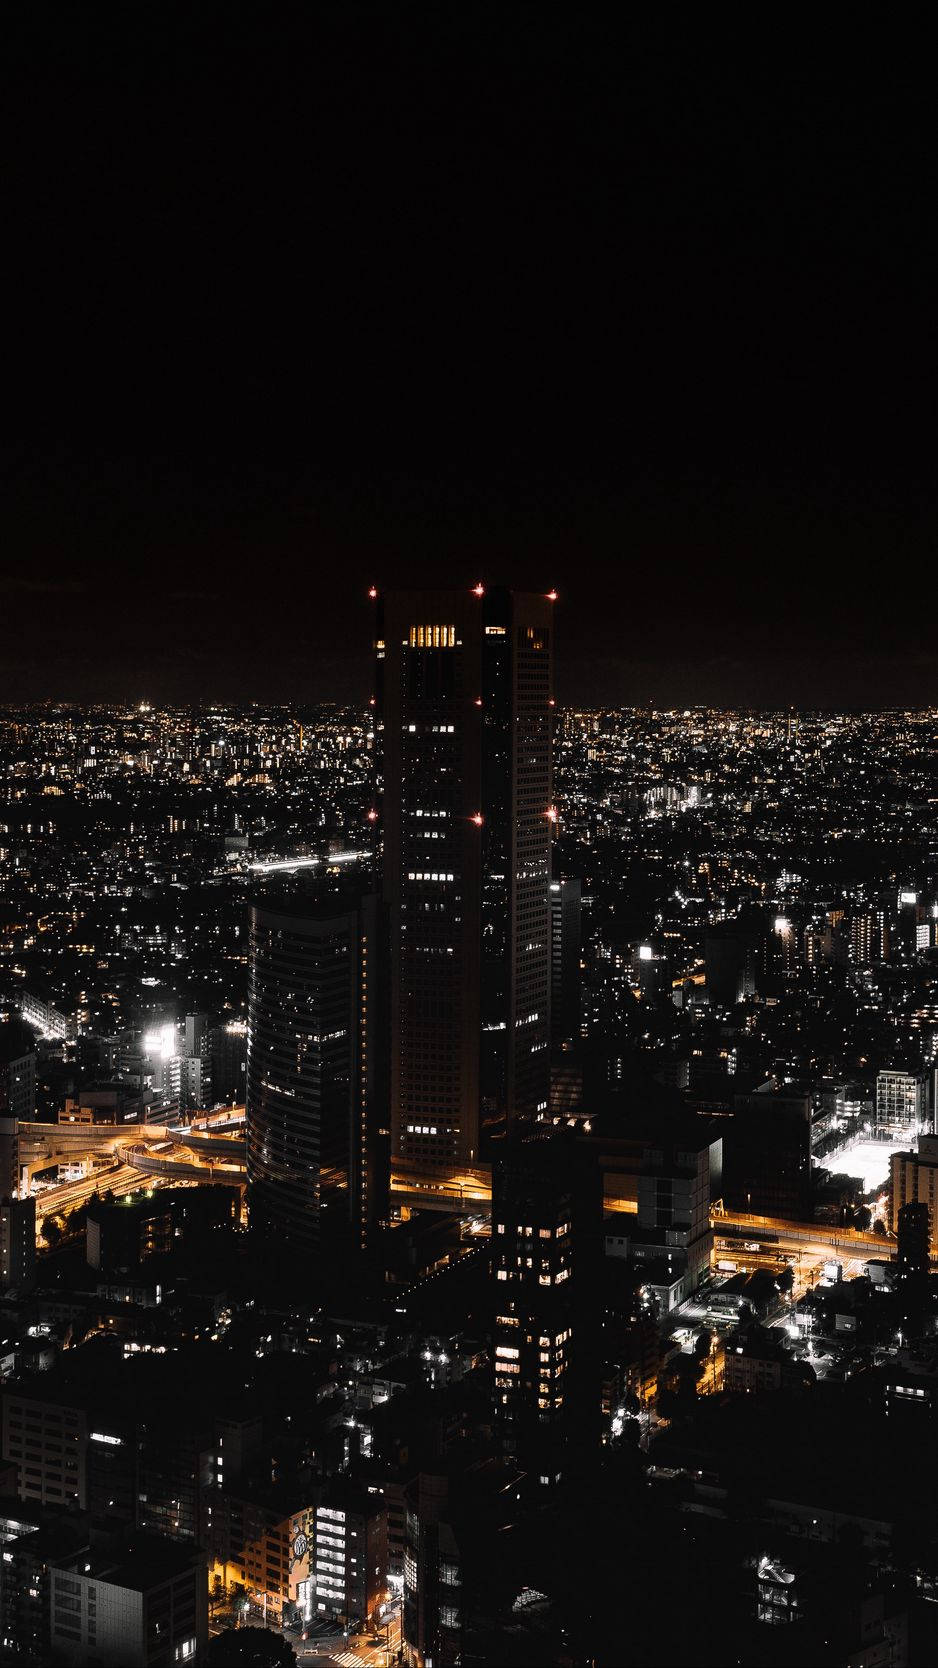 Illuminated streets of Night City offer inspiring views Wallpaper